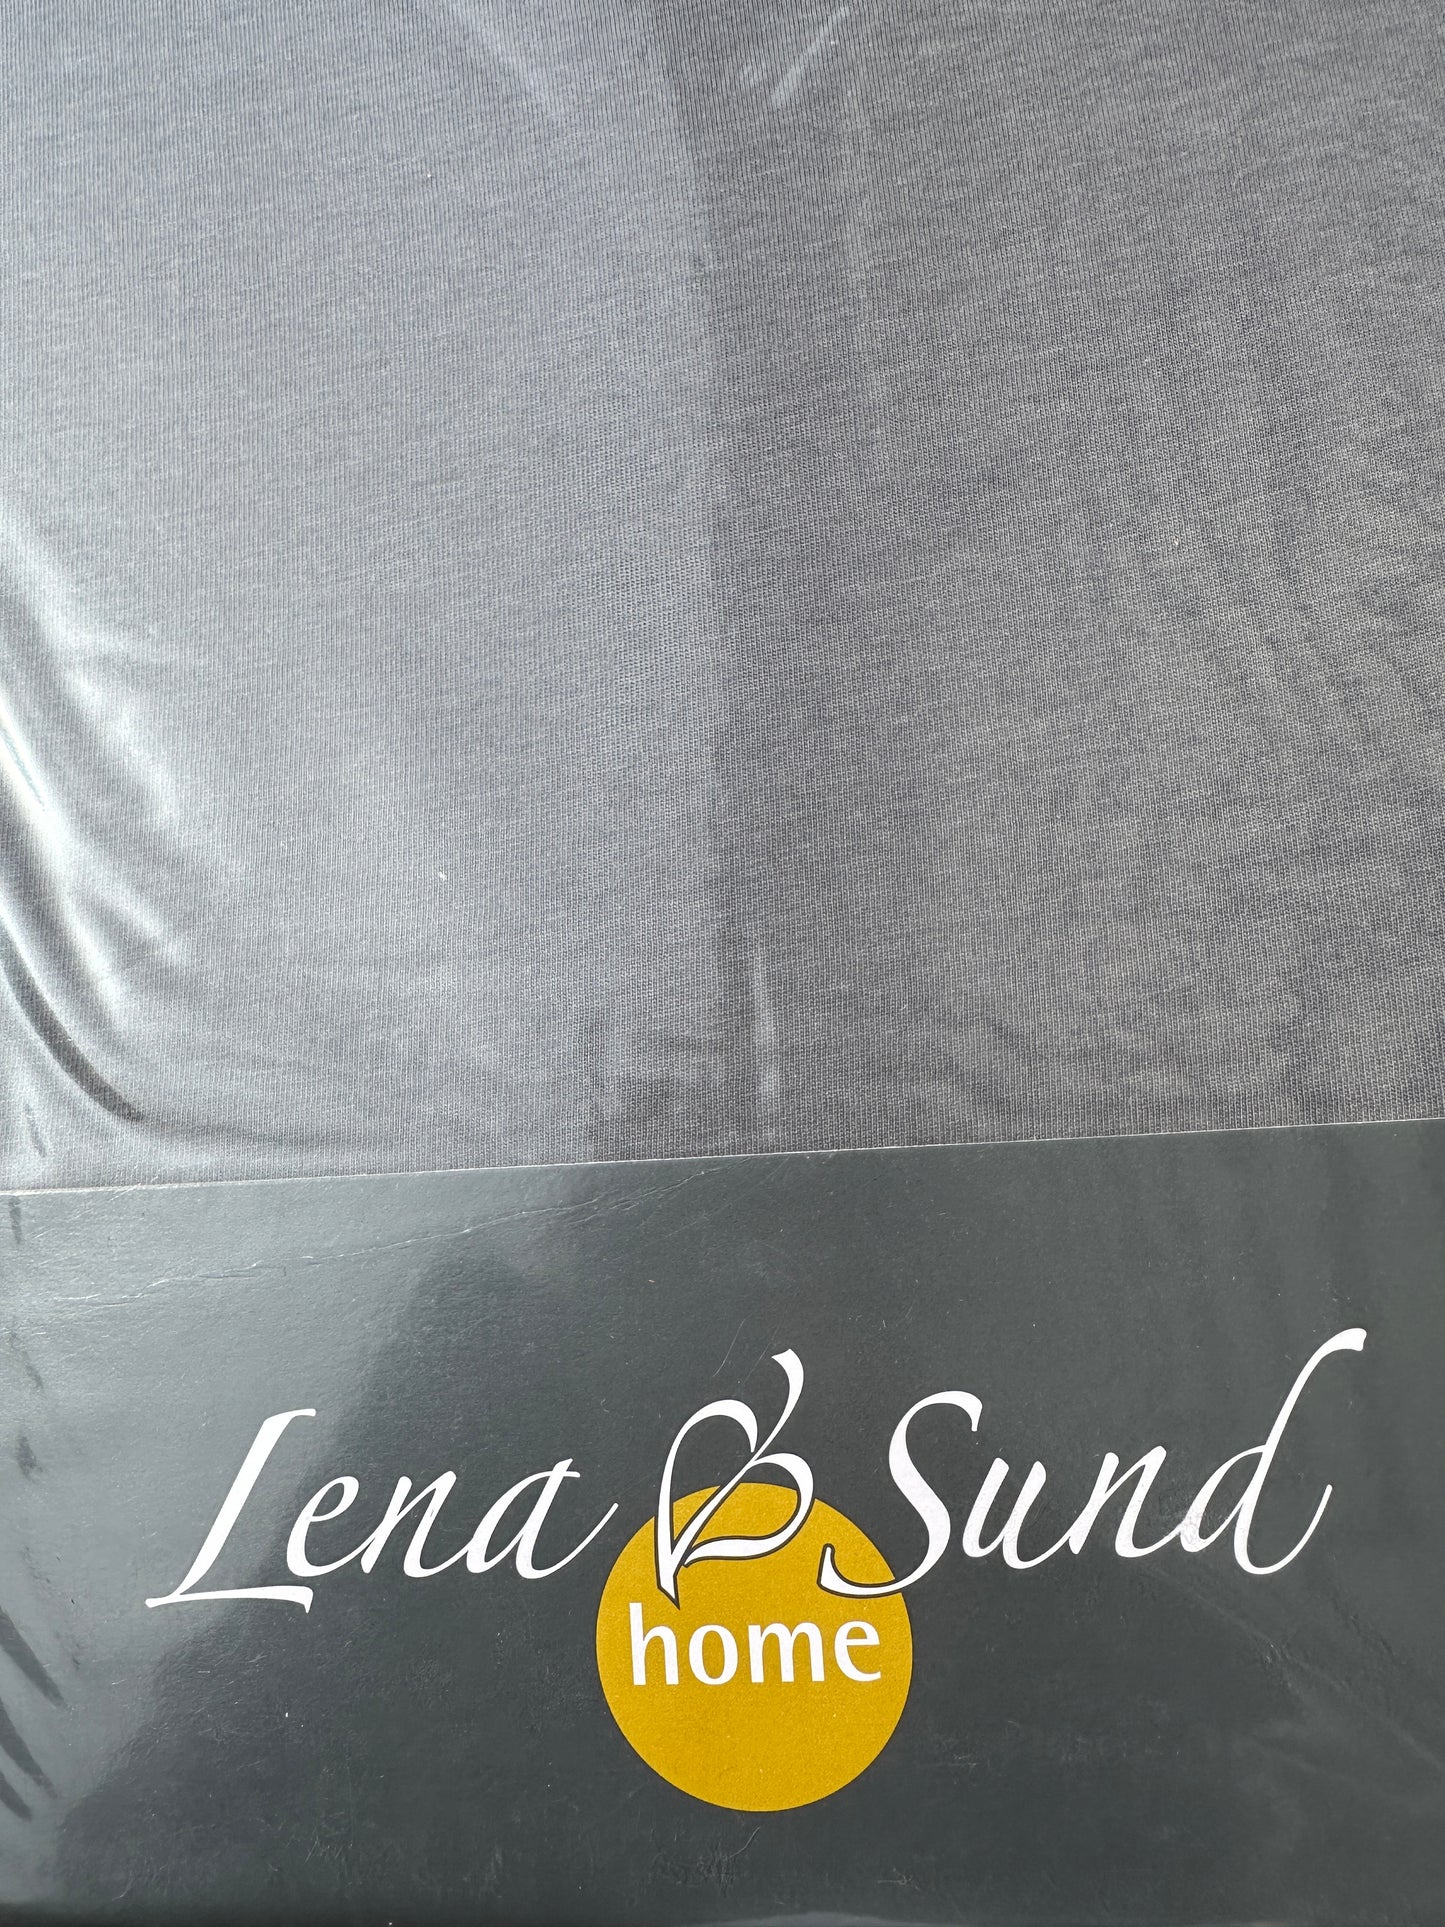 Jersey-Spannbetttuch Lena-Sund Home